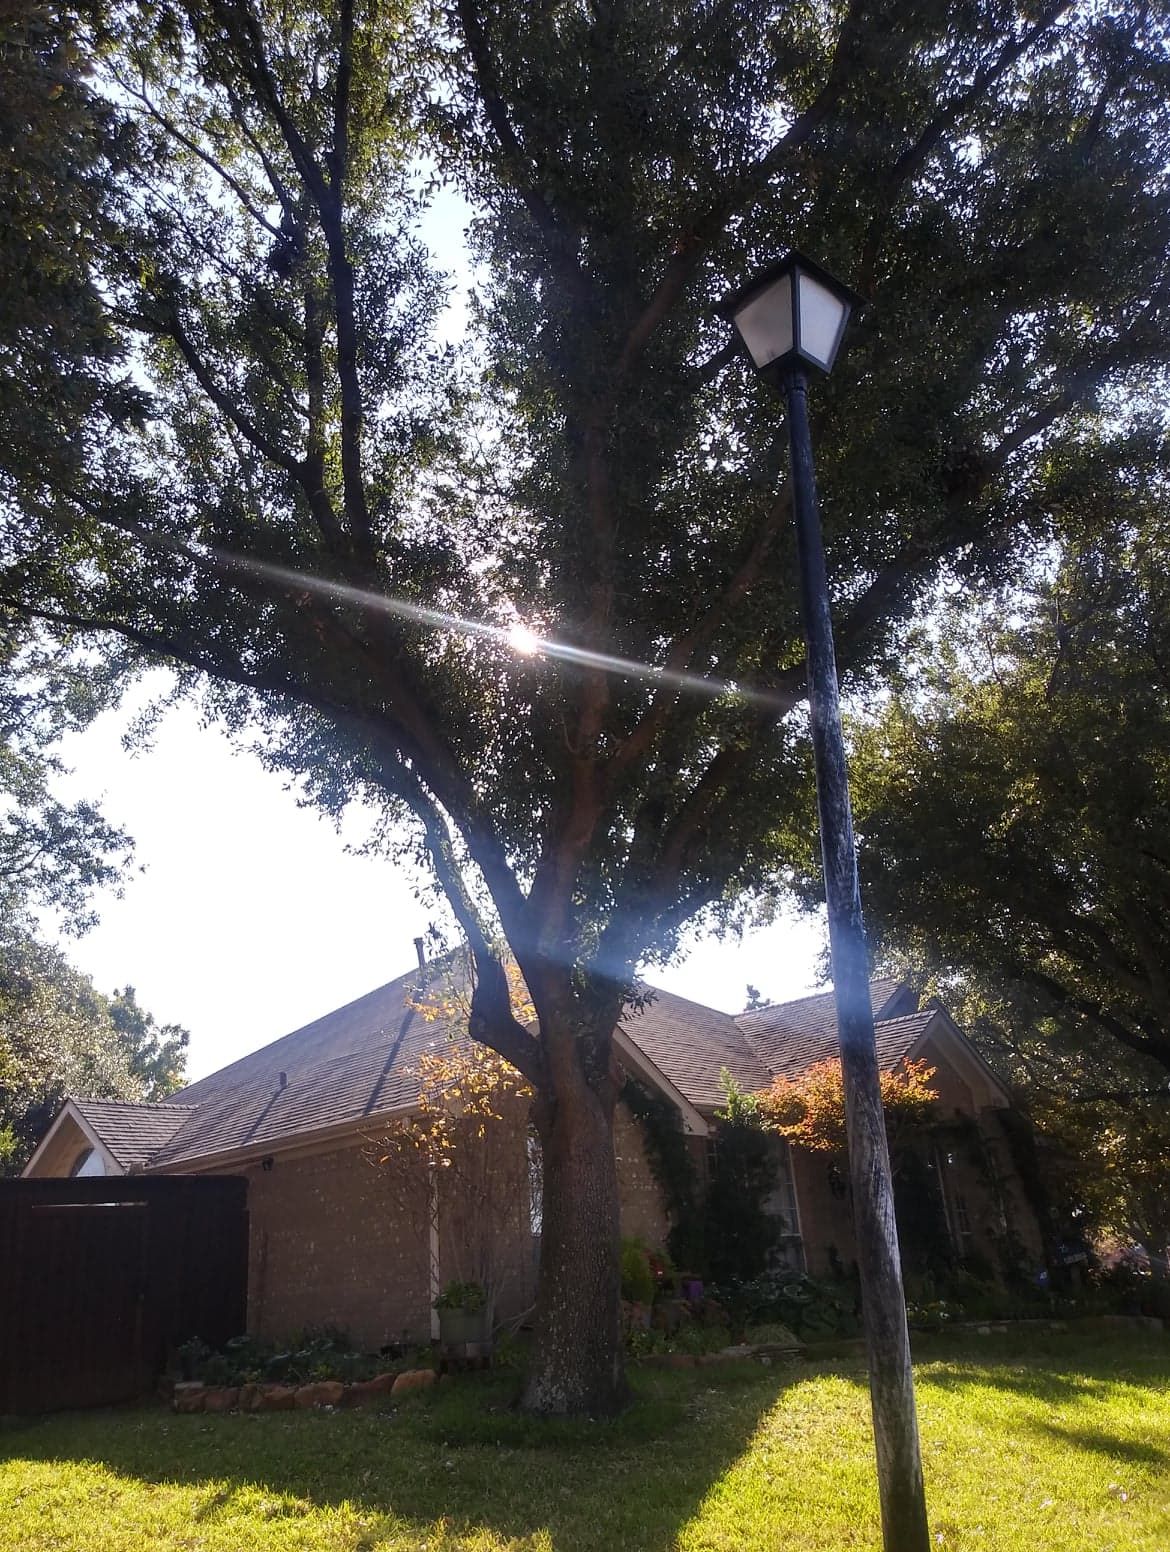 Stump Removal for Chico's Tree Service in Dallas, TX